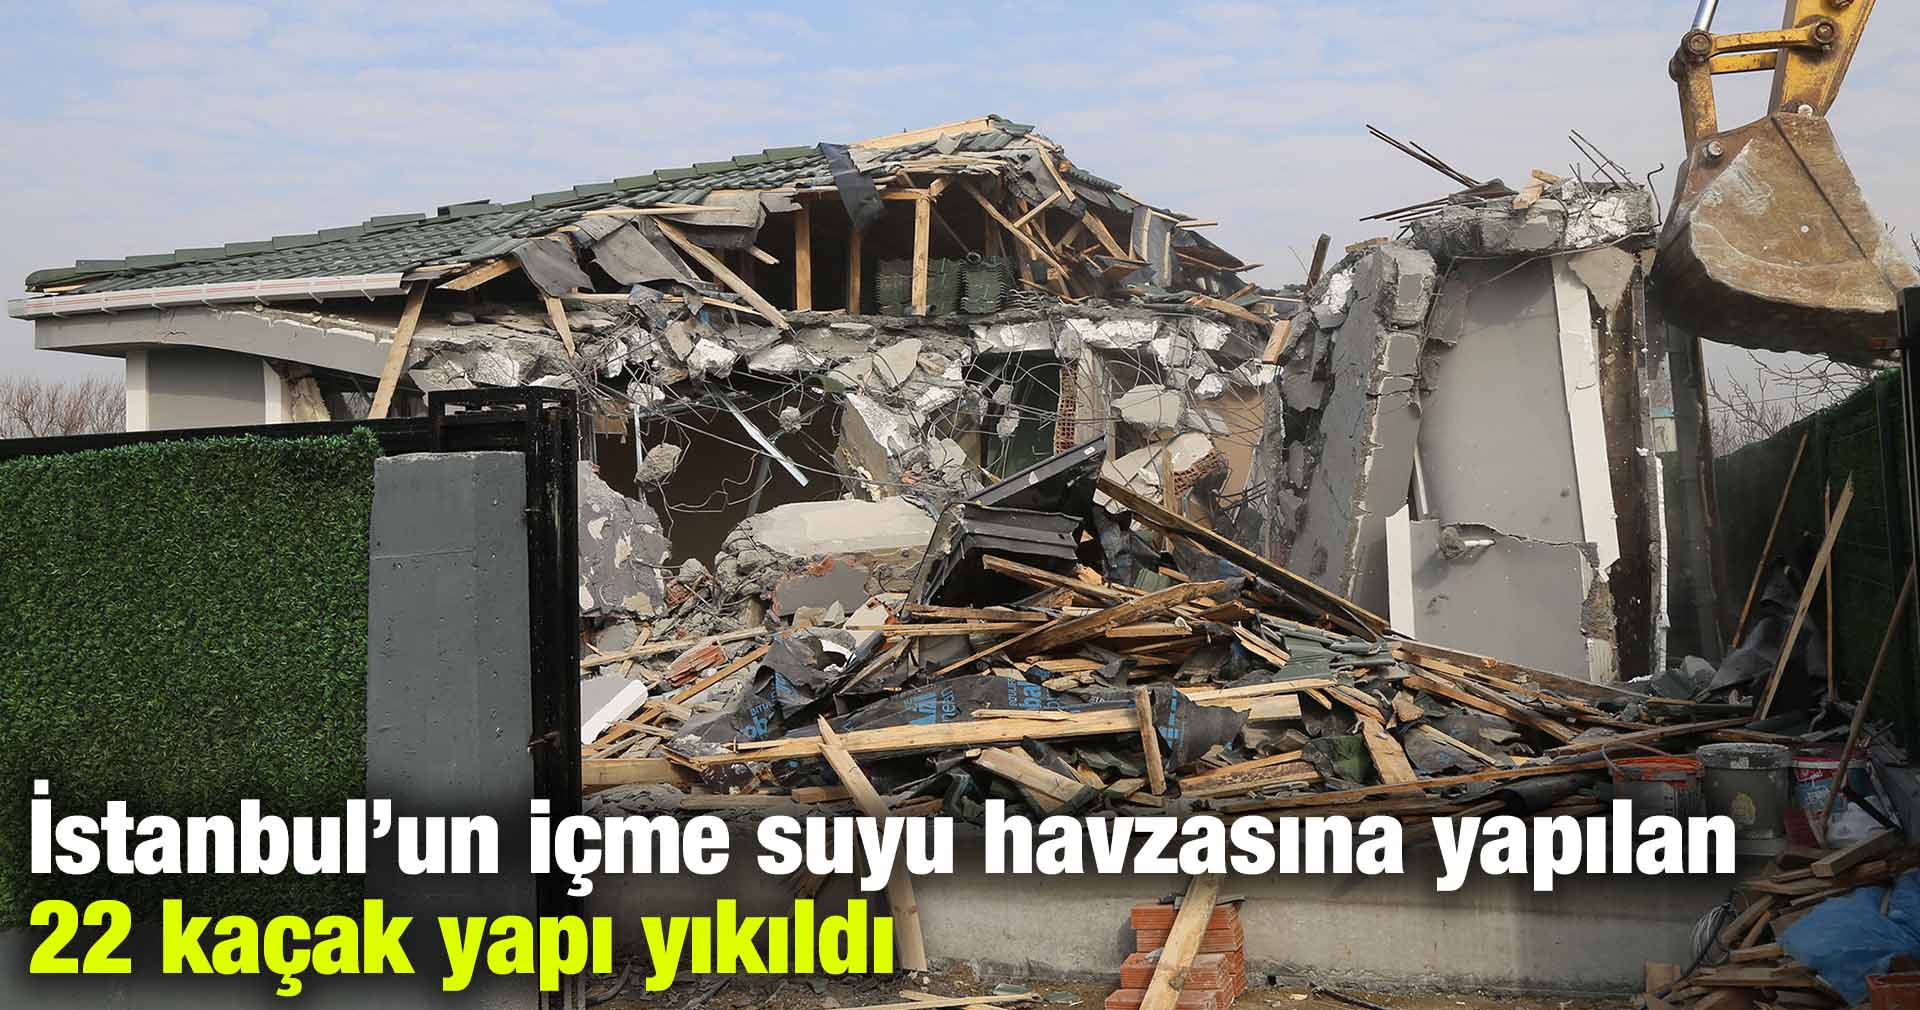 İstanbul’un içme suyu havzasına yapılan 22 kaçak yapı yıkıldı